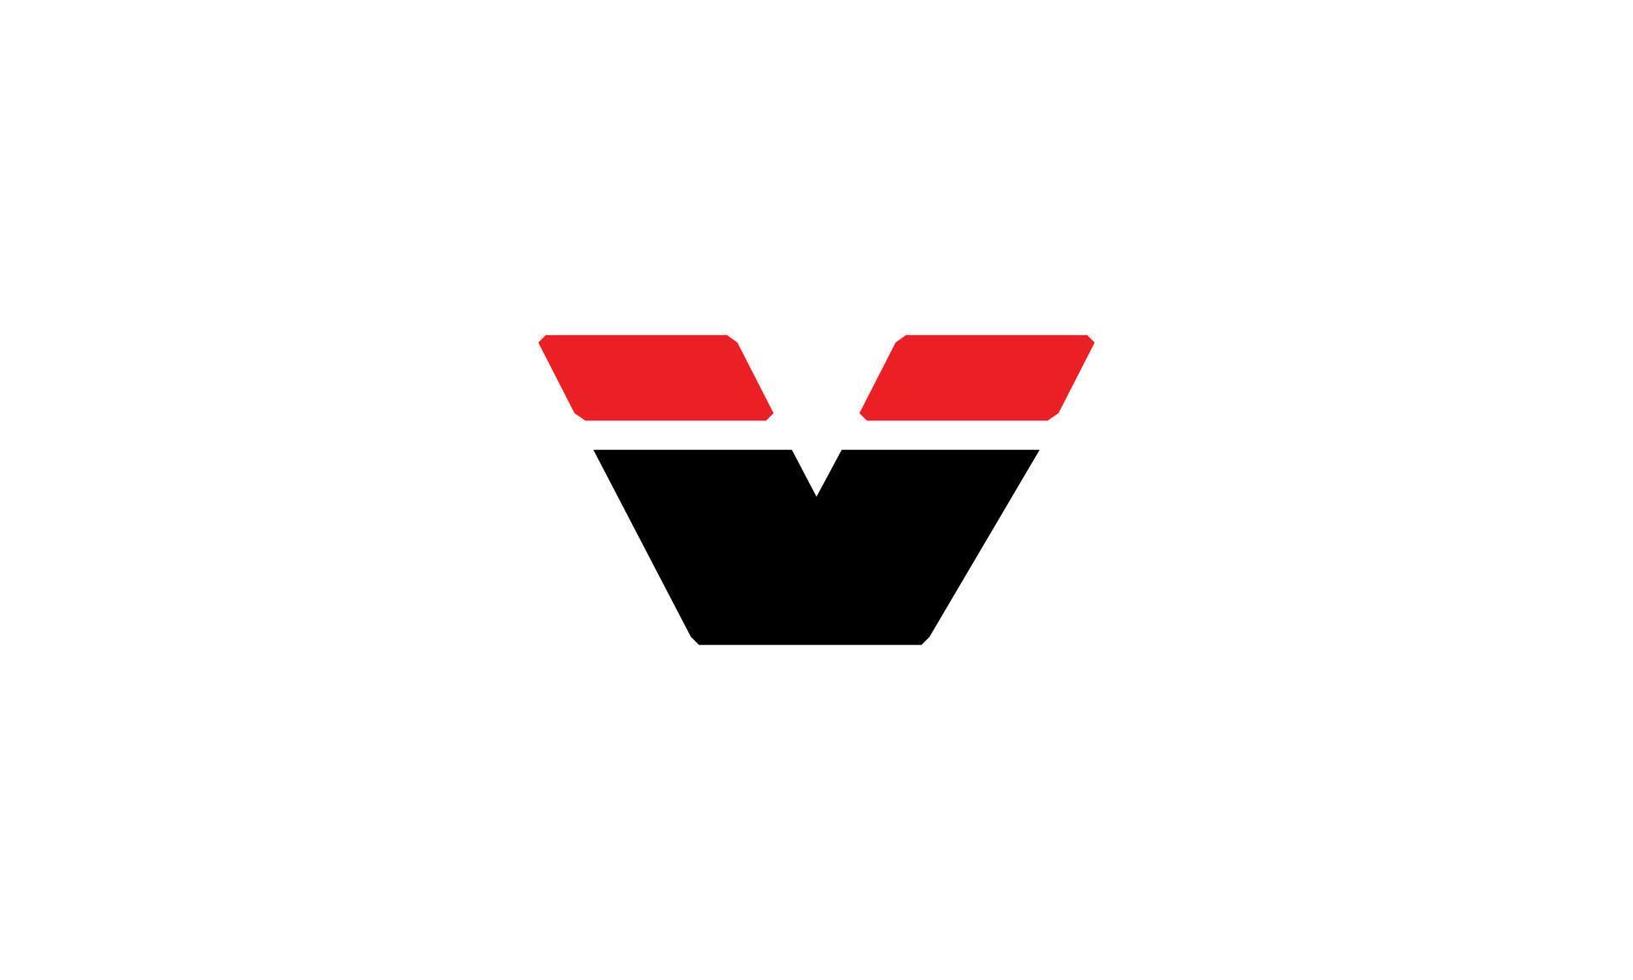 Letter V logo design free vector template.